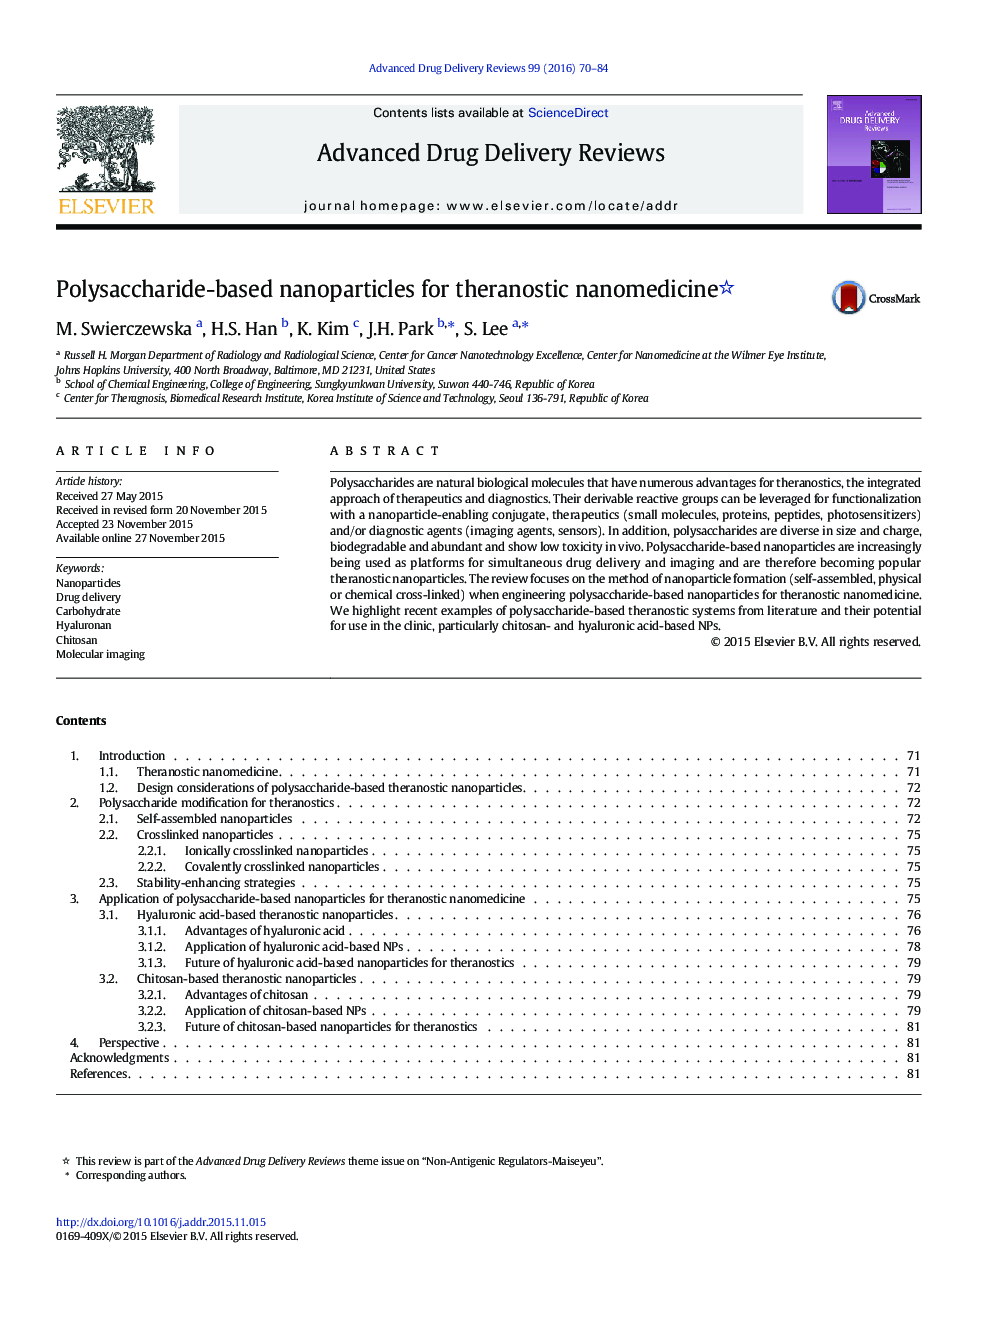 Polysaccharide-based nanoparticles for theranostic nanomedicine 